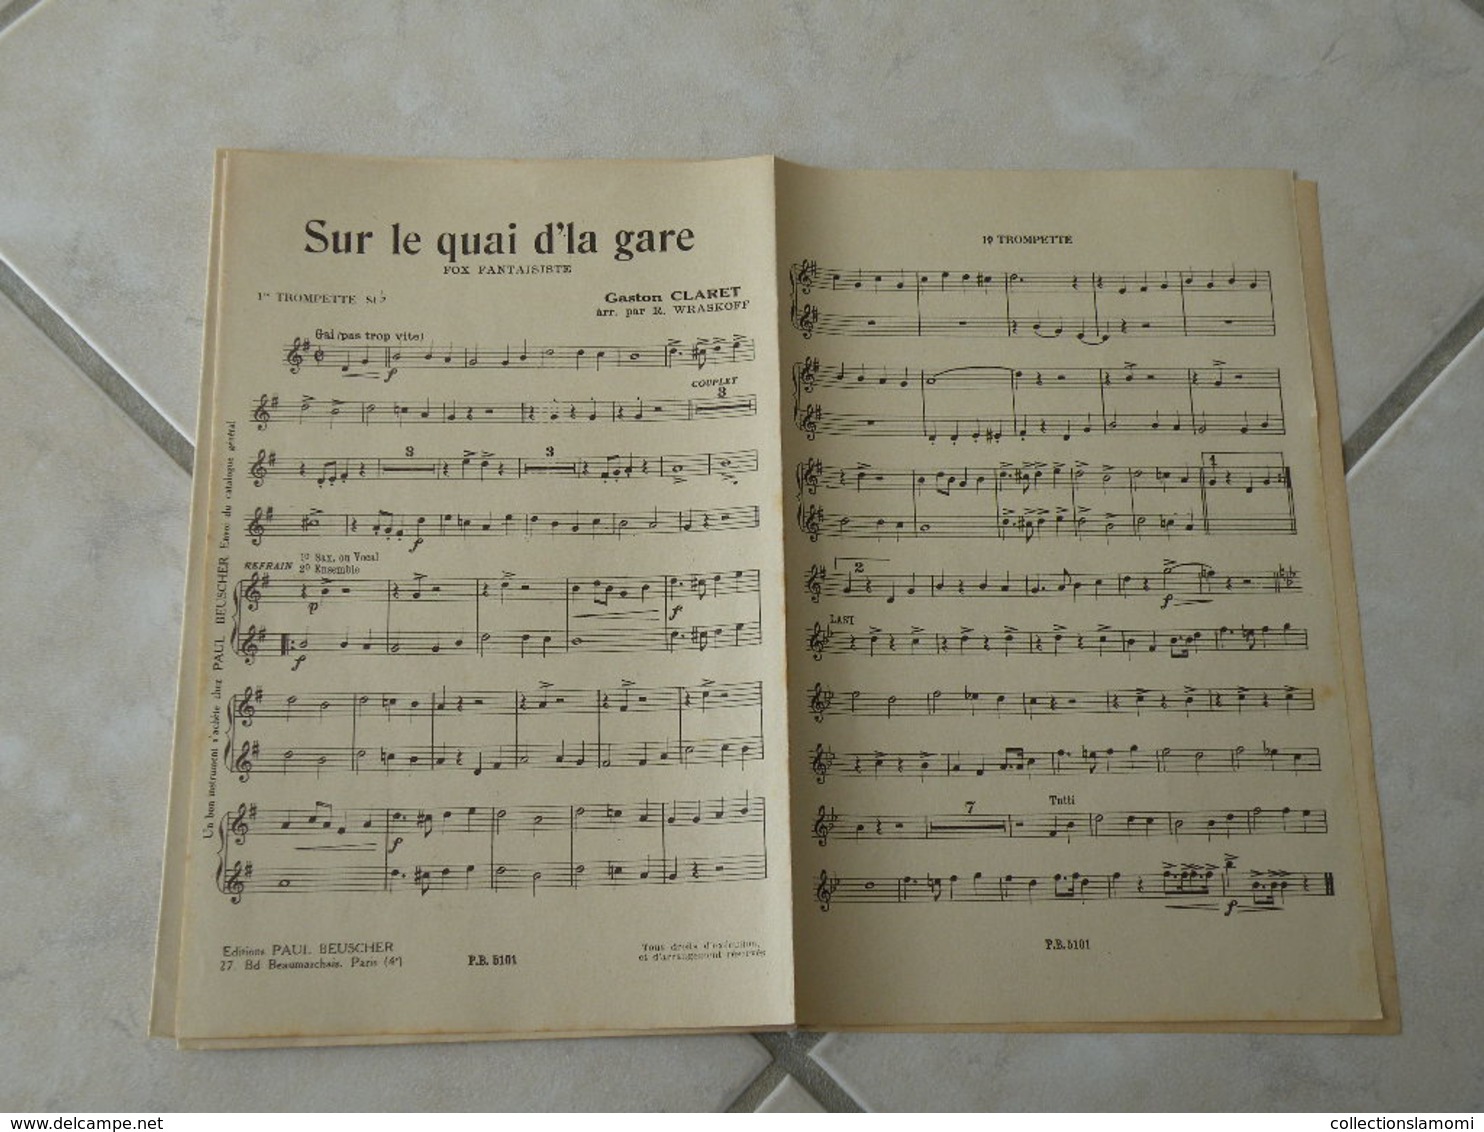 Sur le quai d'la gare -(Paroles Jean Vorcet)-(Musique Gaston Claret) Partition1935 pour orchestre